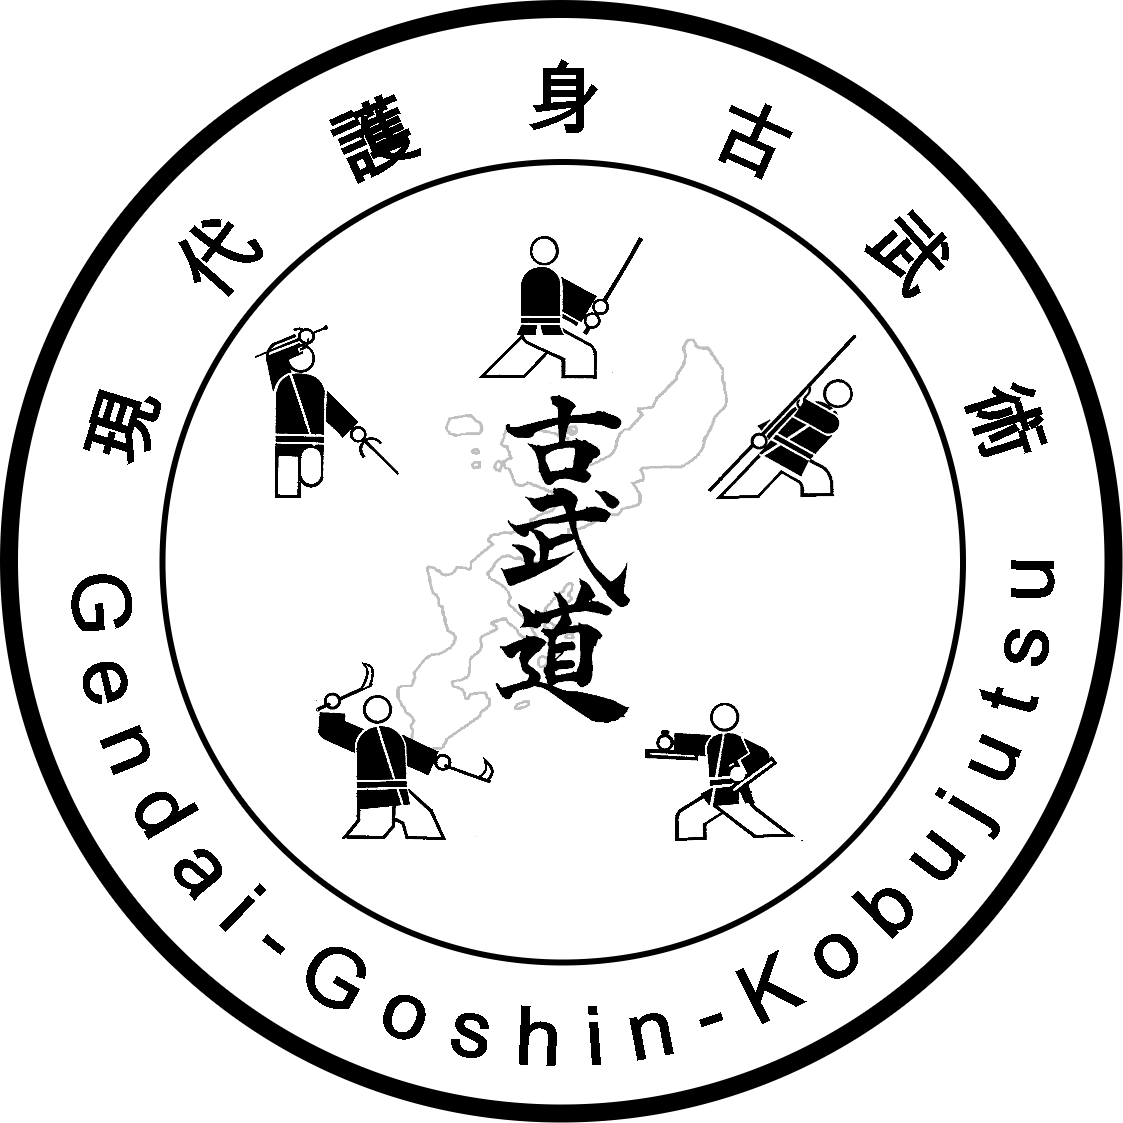 Gendai Goshin Kobujutsu